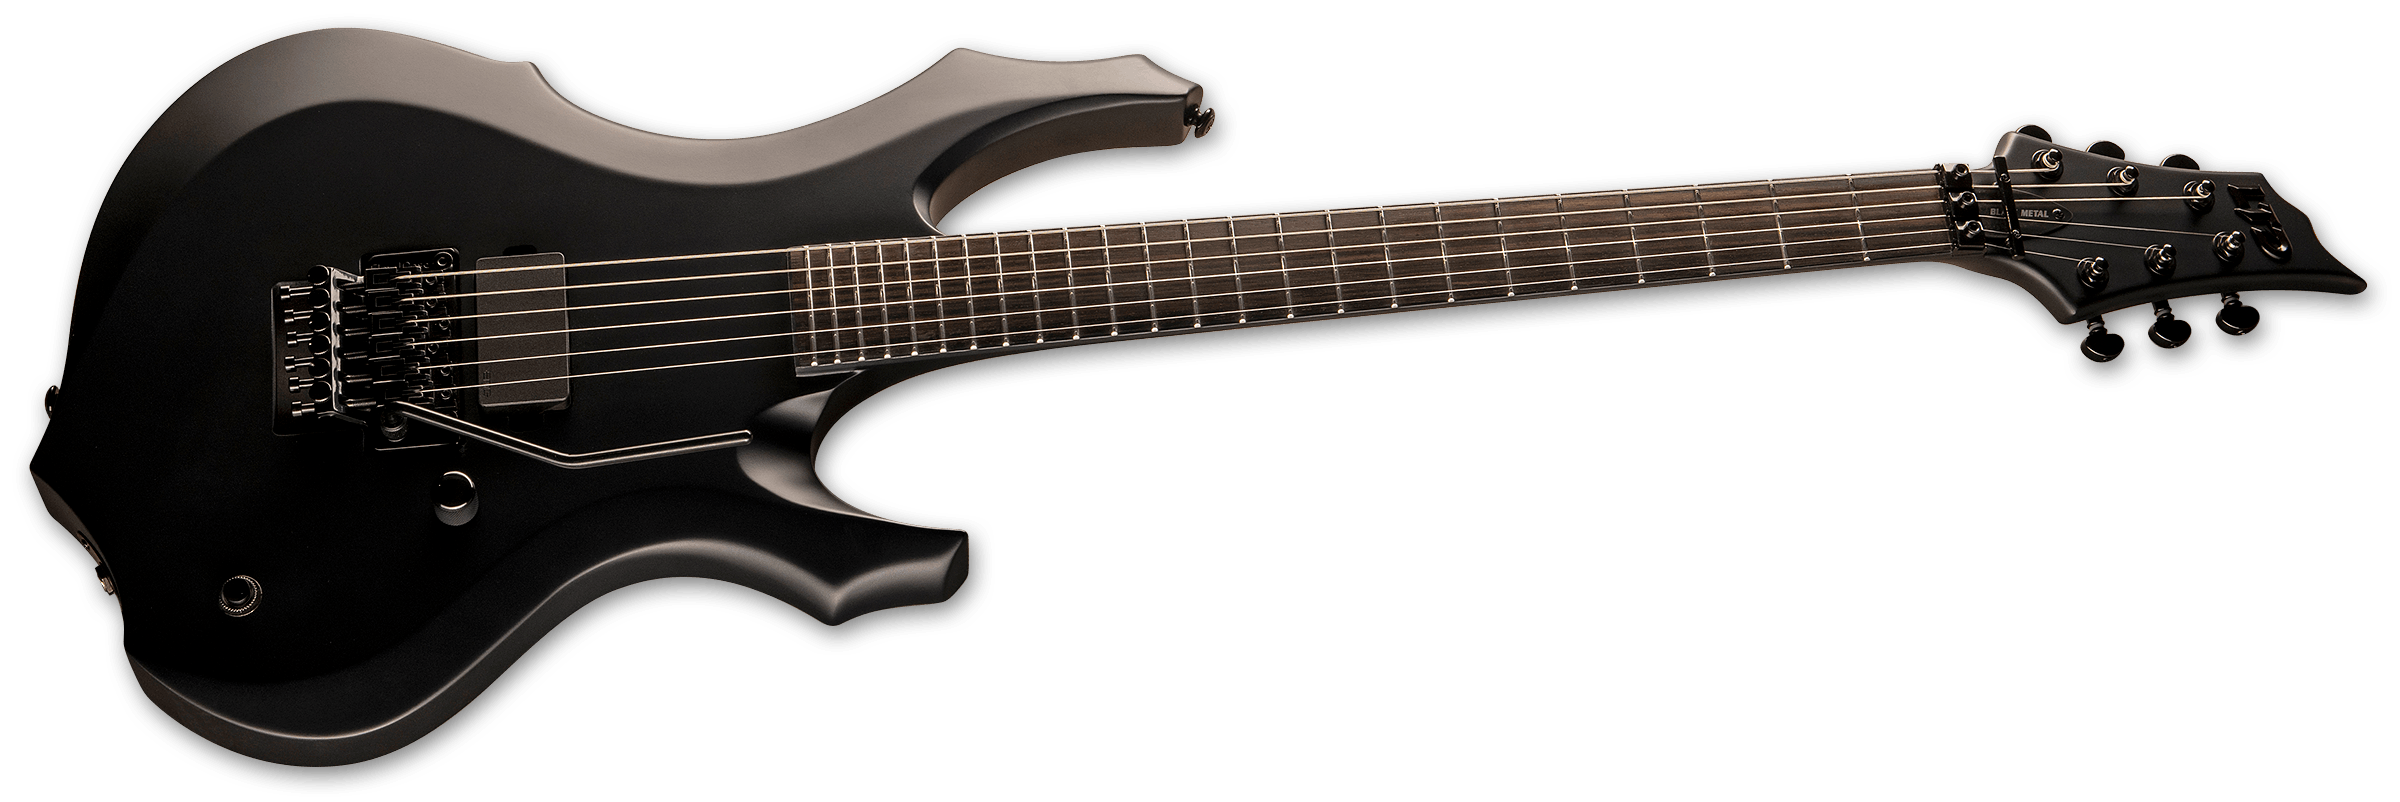 Esp Ltd F Black Metal Electric Guitar In Black Satin Andertons Music Co